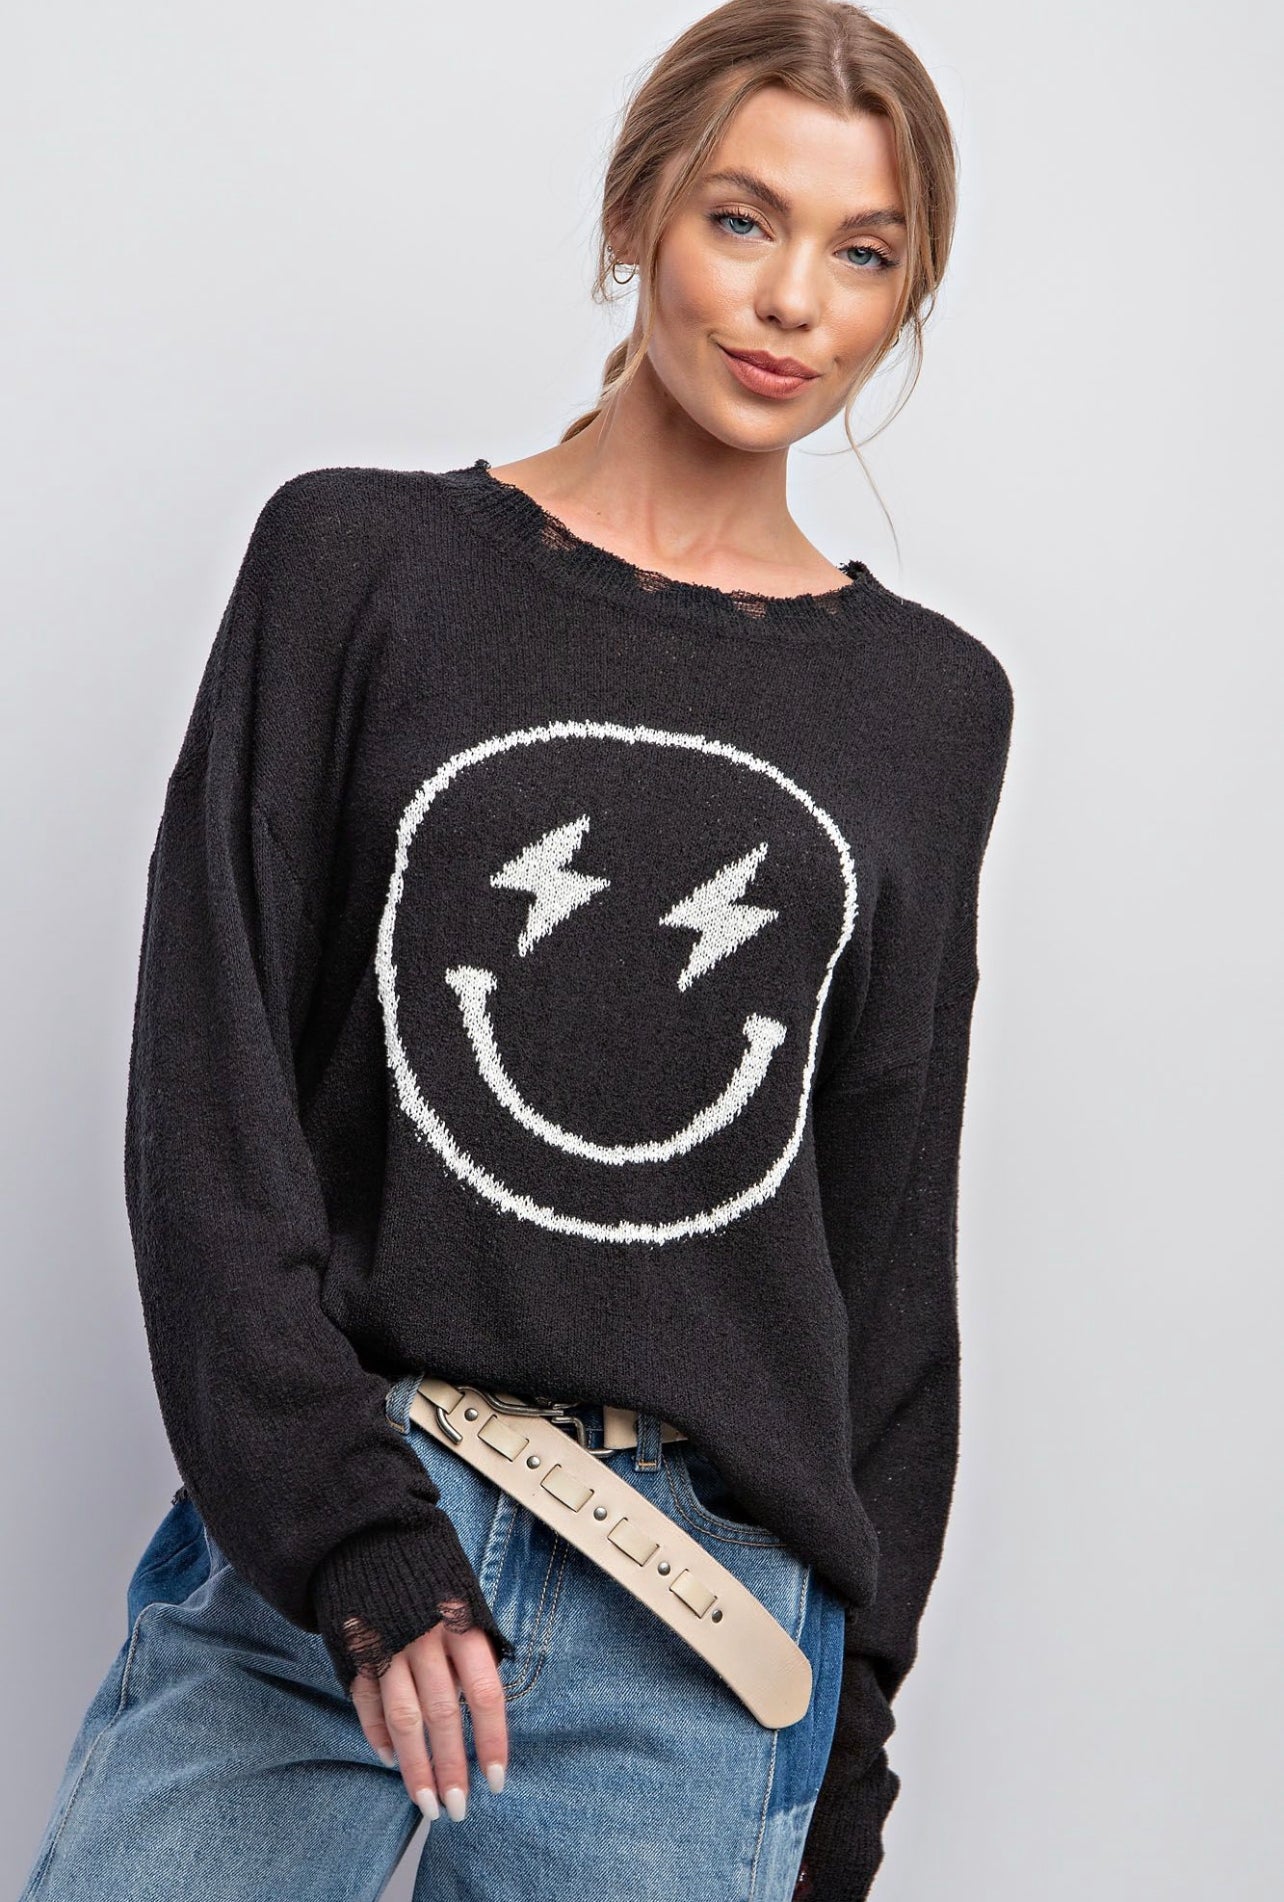 Lightning Bolt Smiley Sweater